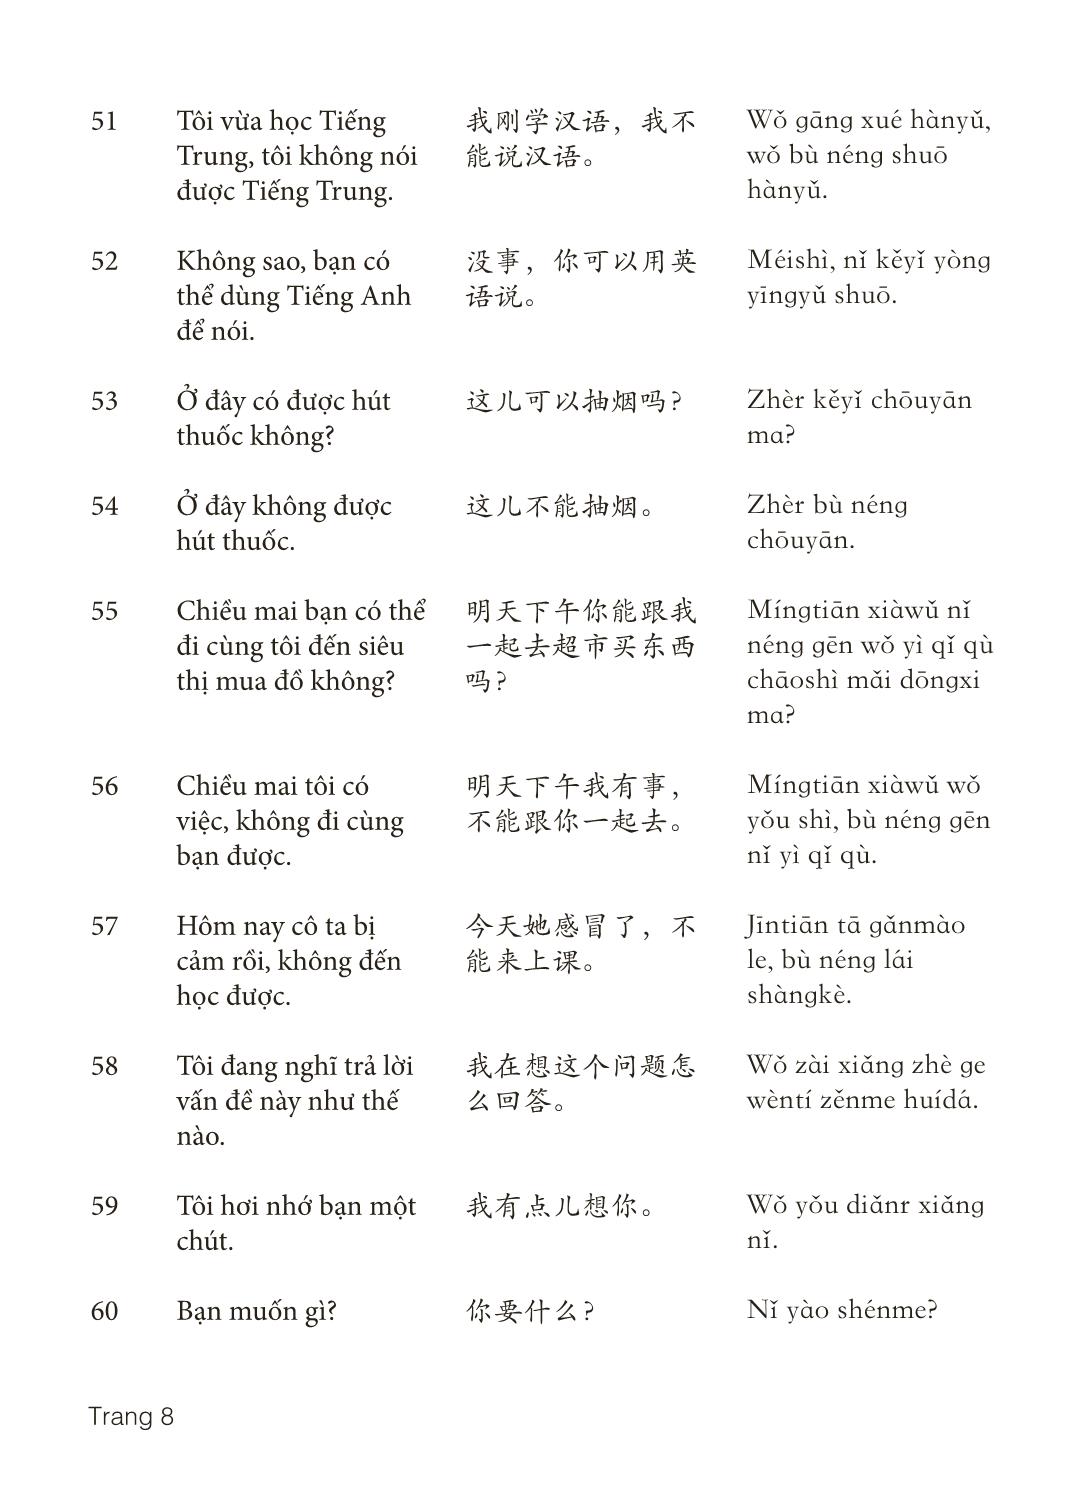 3000 Câu đàm thoại tiếng Hoa - Phần 7 trang 8